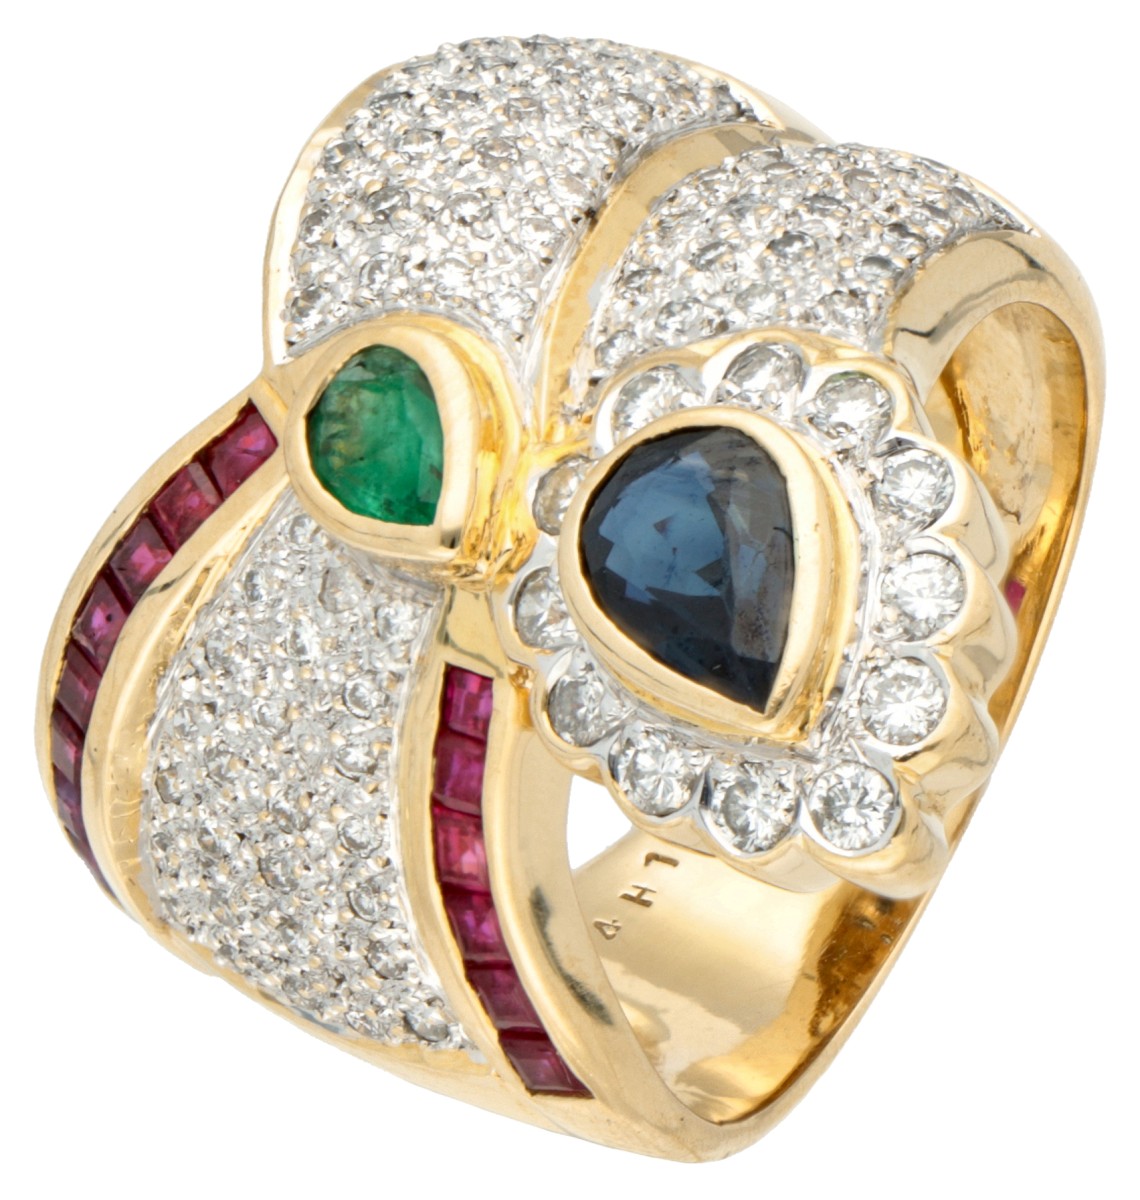 18K Geelgouden asymmetrische design ring bezet met ca. 1.12 ct. diamant, smaragd, saffier, robijn.